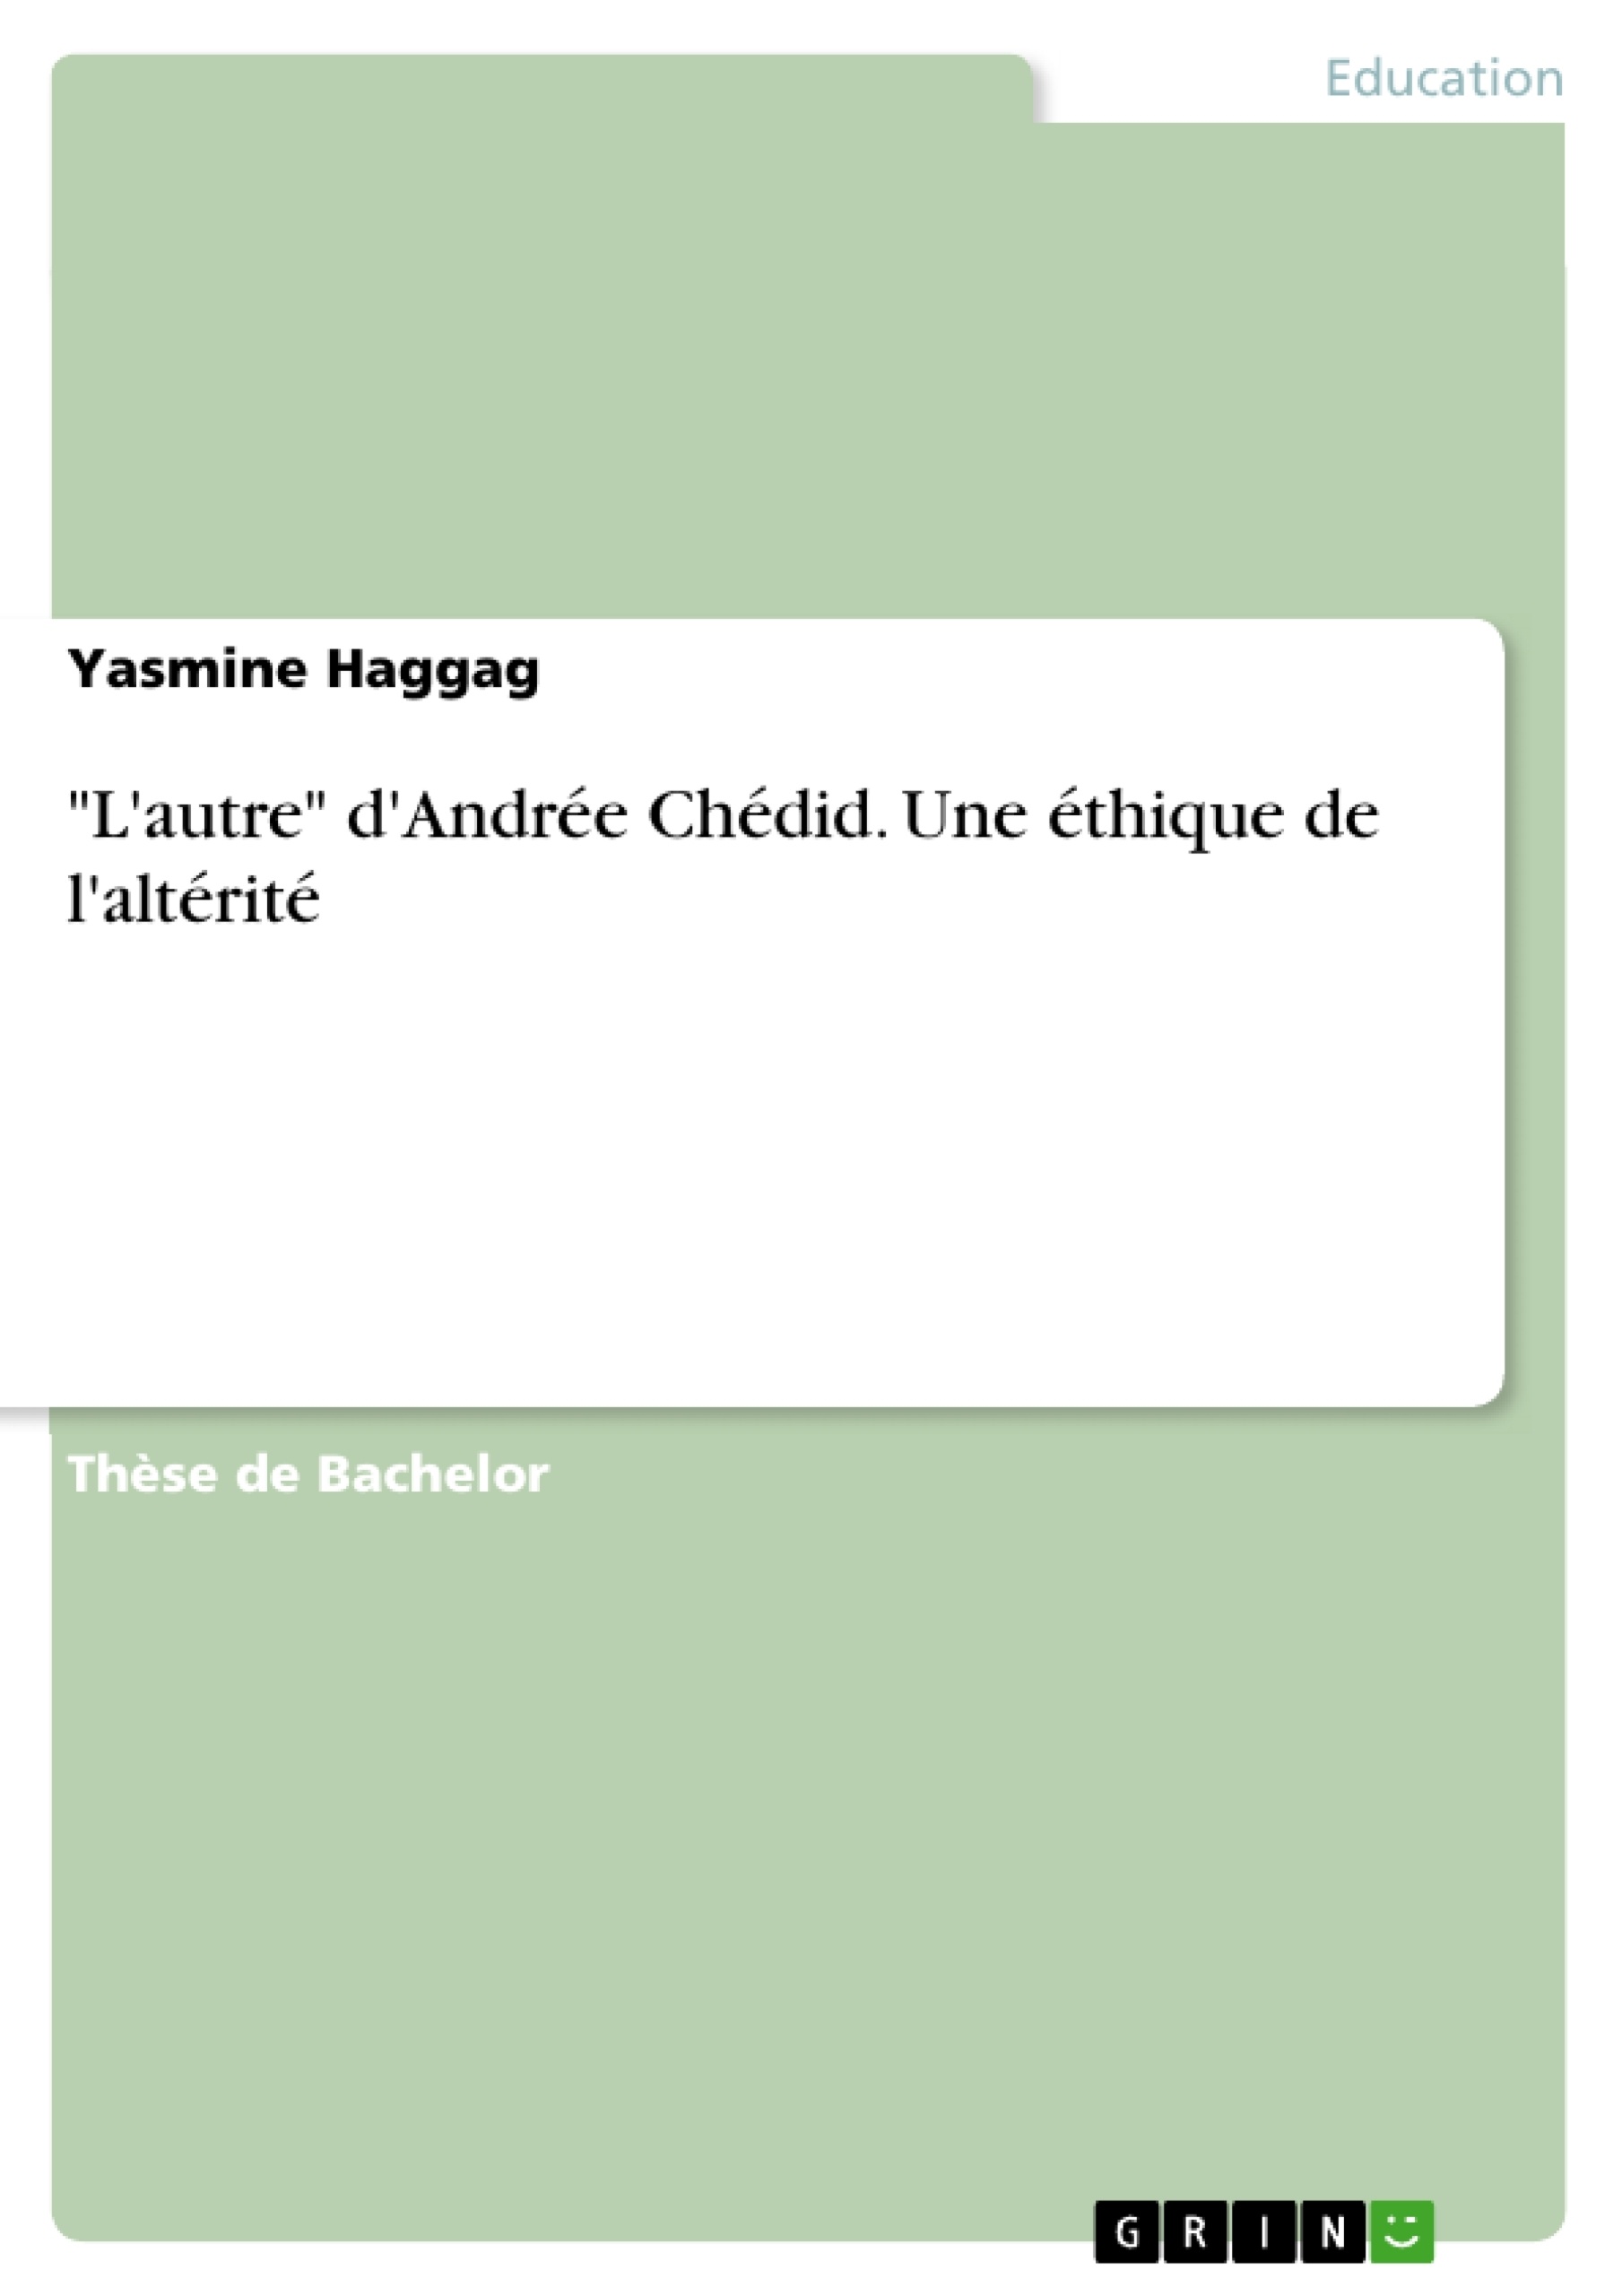 Titre: "L'autre" d'Andrée Chédid. Une éthique de l'altérité